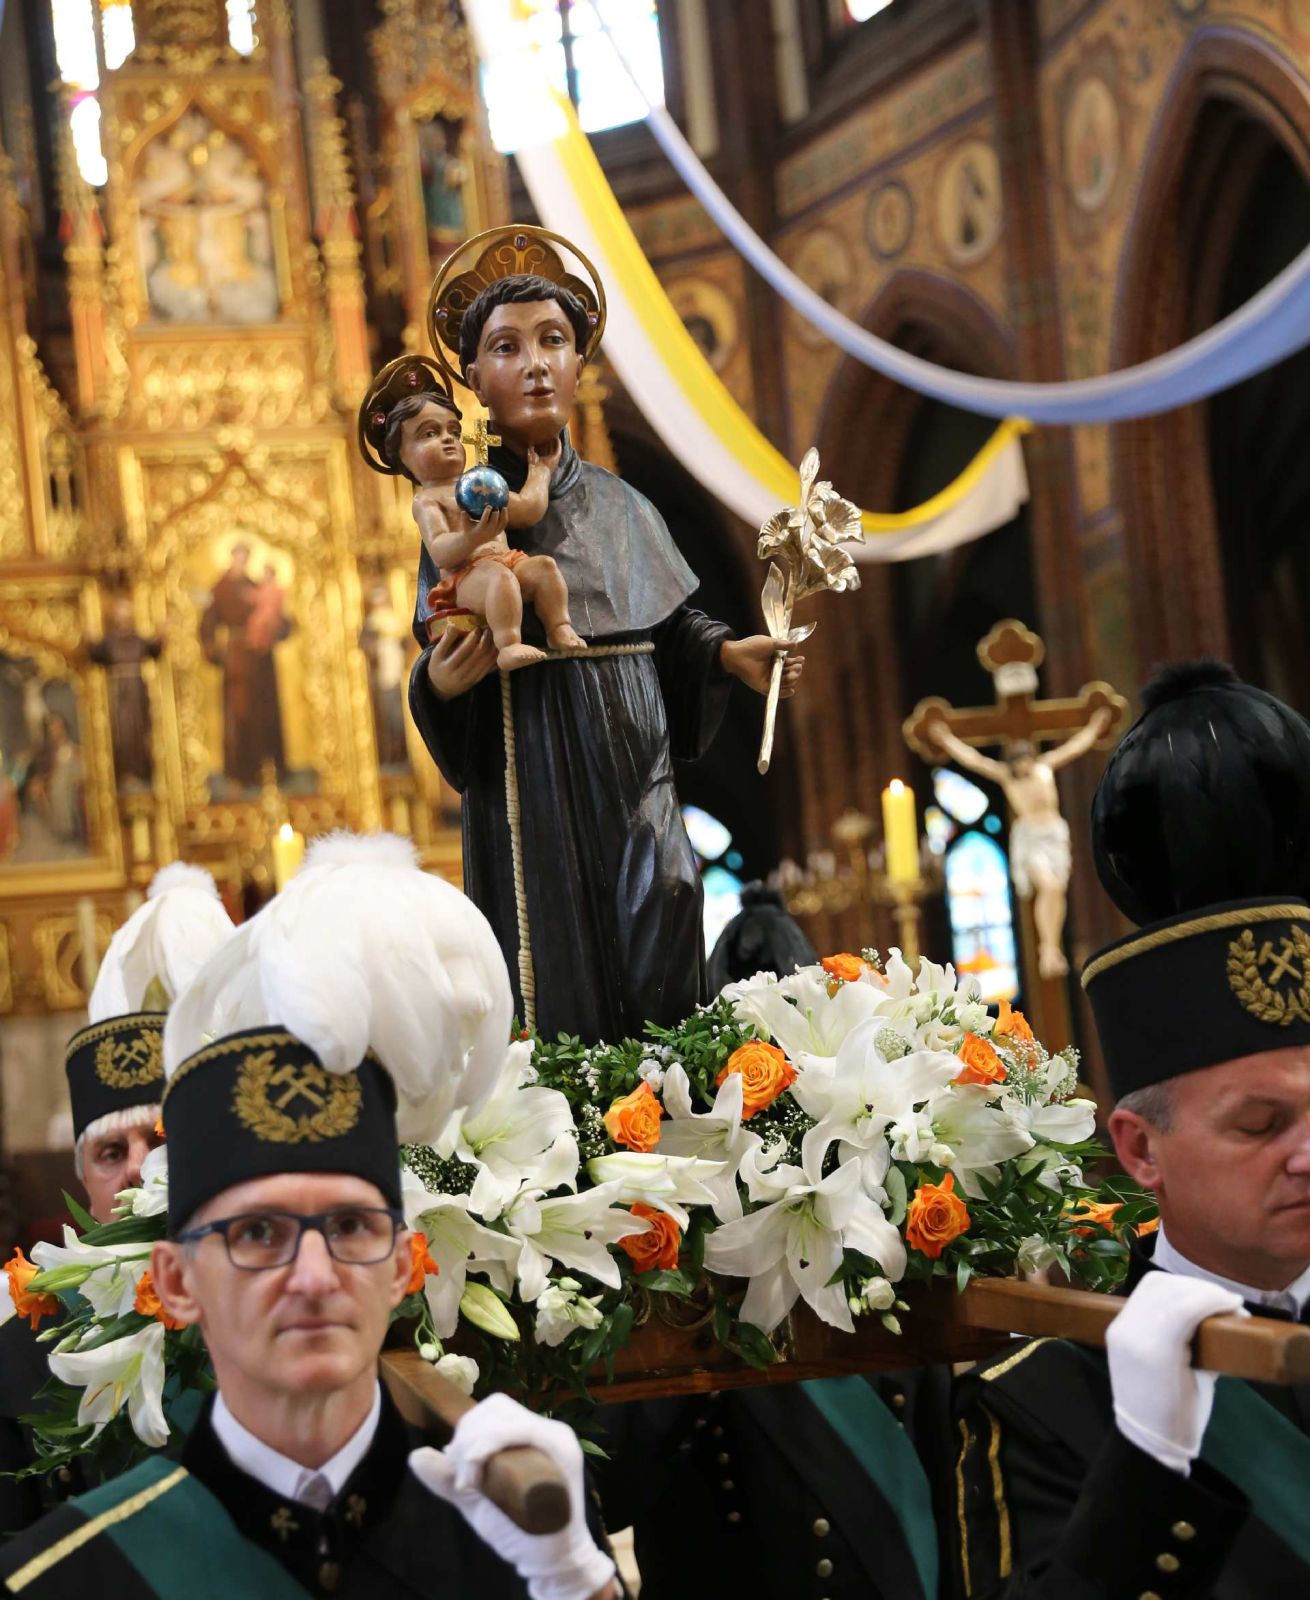 Tradycyjna procesja z figurą św. Antoniego odbędzie się w Rybniku w najbliższą niedzielę, zaraz po odpustowej sumie w bazylice, która rozpocznie się o god. 11. Zdj. Wacław Troszka